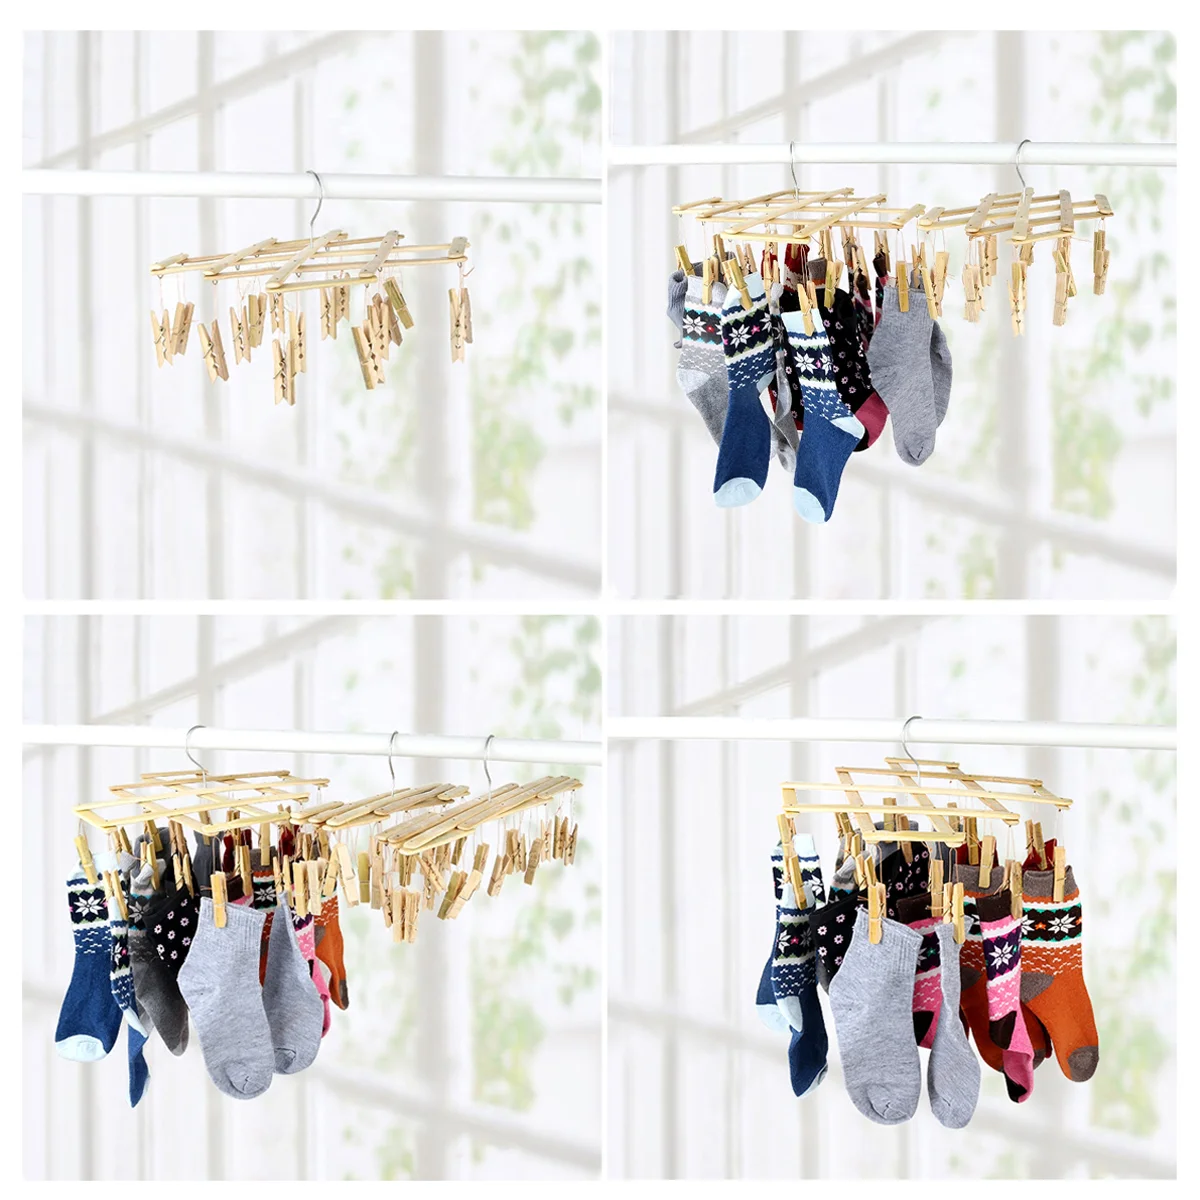 

Socks Drying Hanger Folding Hangers Drying Racks Laundry Multi Hanger Folding Clothes Peg Hanging Drying Rack